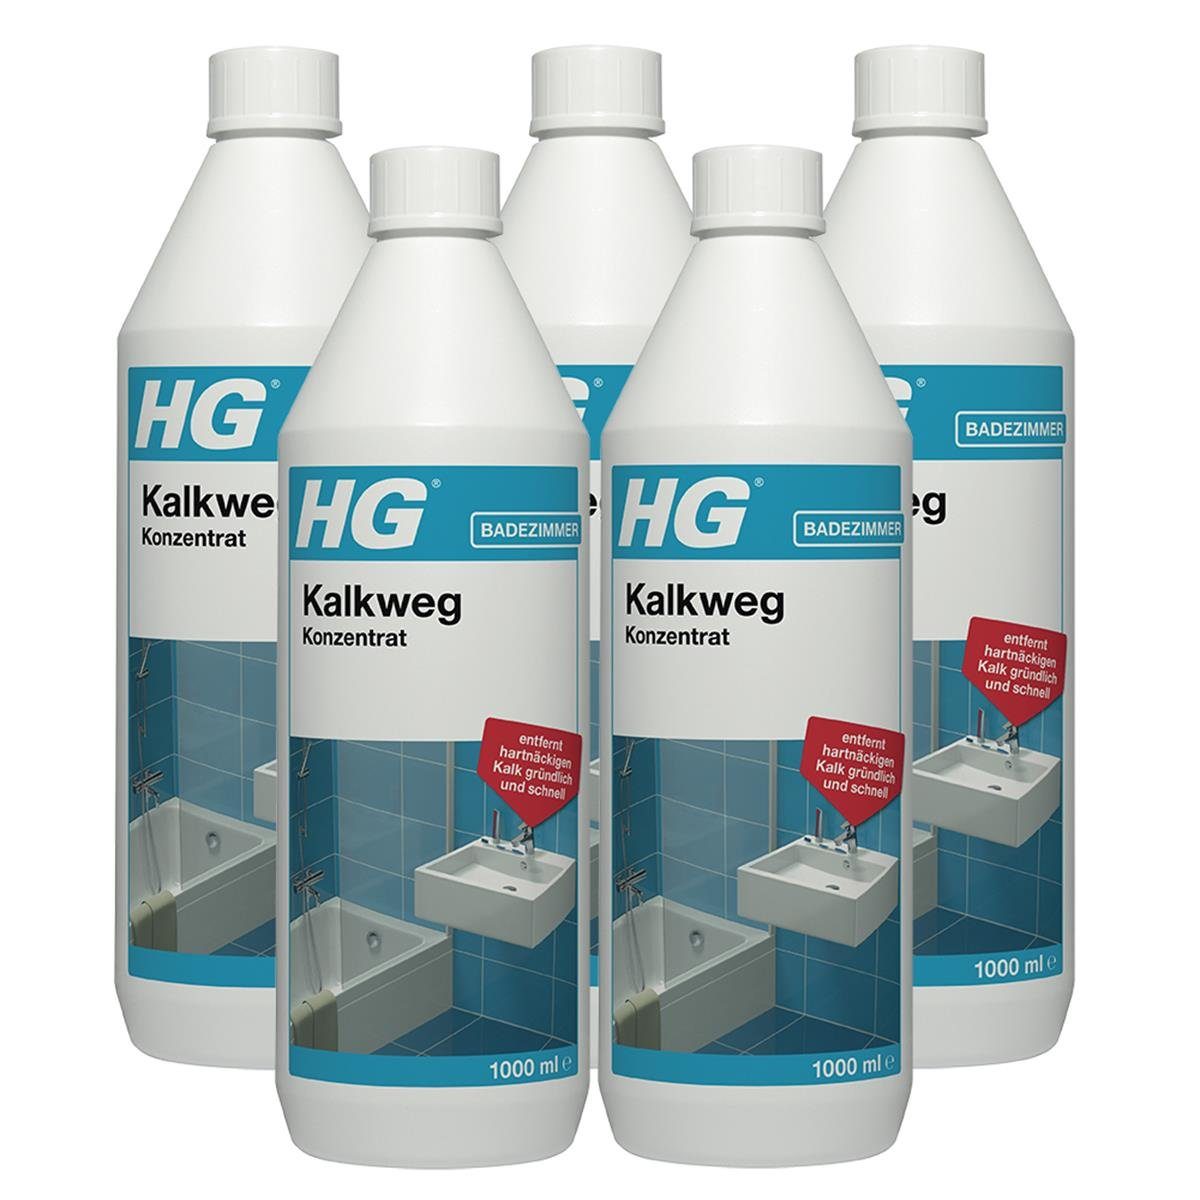 HG HG Kalkweg Konzentrat 1L - Entfernt auch Rostflecken & Urinstein (5er Badreiniger